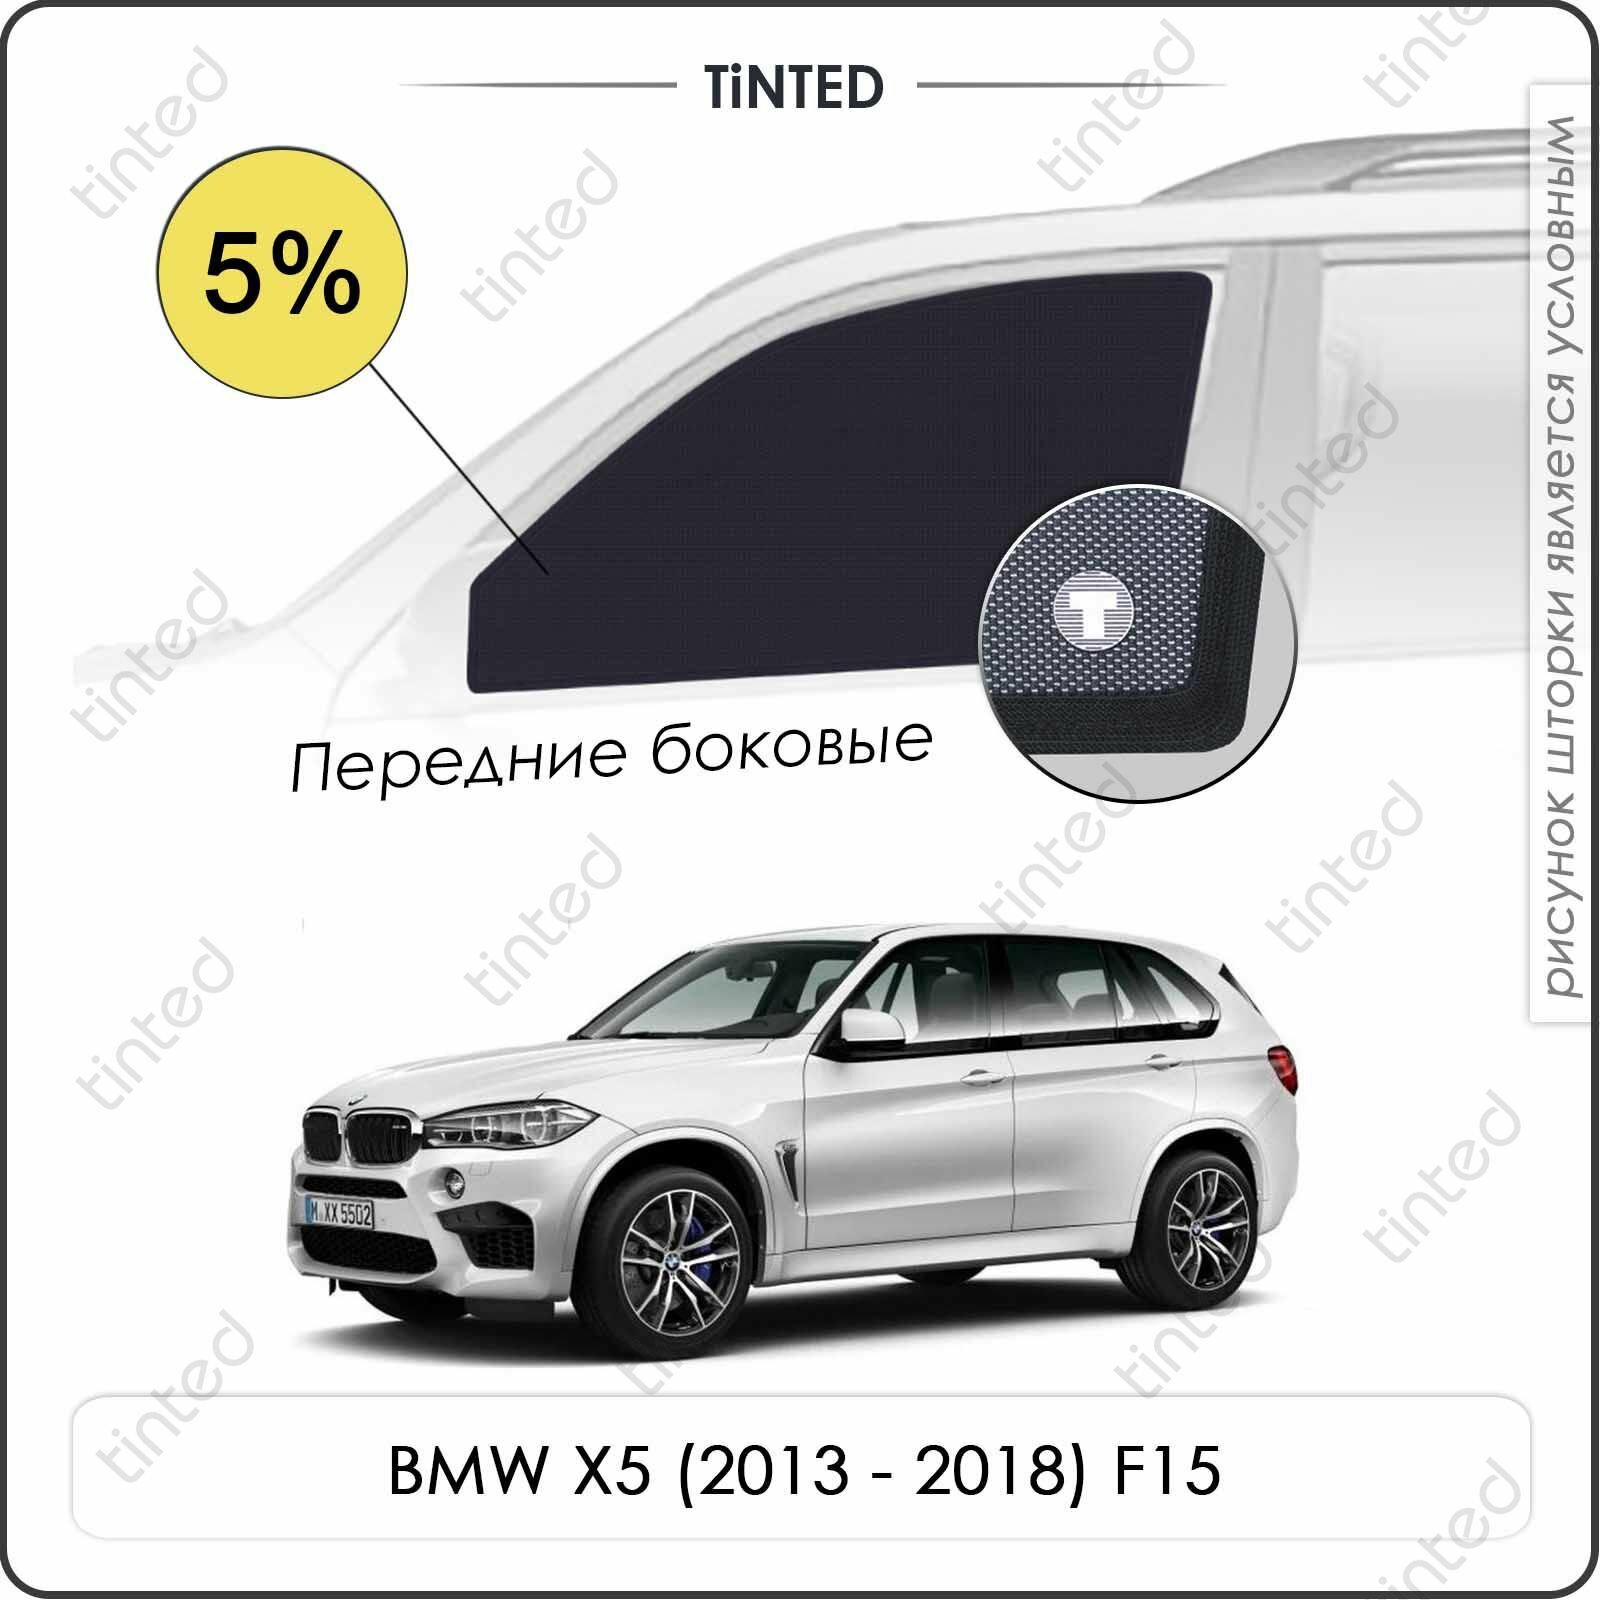 Шторки на автомобиль солнцезащитные BMW X5 3 Внедорожник 5дв. (2013 - 2018) F15 на задние двери 5% сетки от солнца в машину БМВ Х5 ф15 Каркасные автошторки Premium